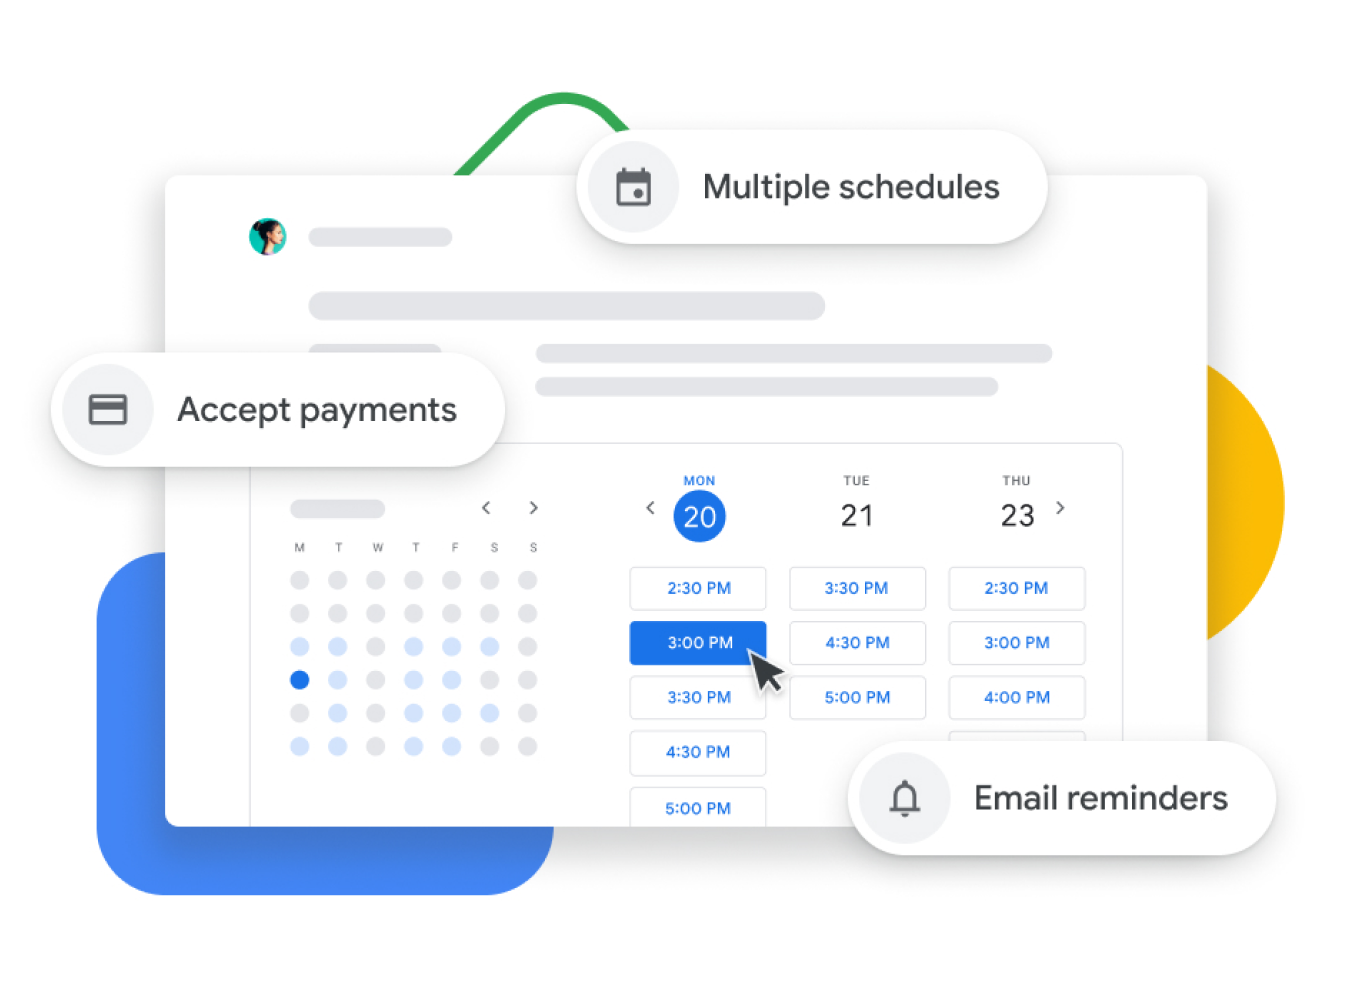 Grafisk fremstilling av en Google-kalender med avtaleplanlegging der brukerne kan motta betalinger, bekrefte kundeavtaler og sende e-postpåminnelser.